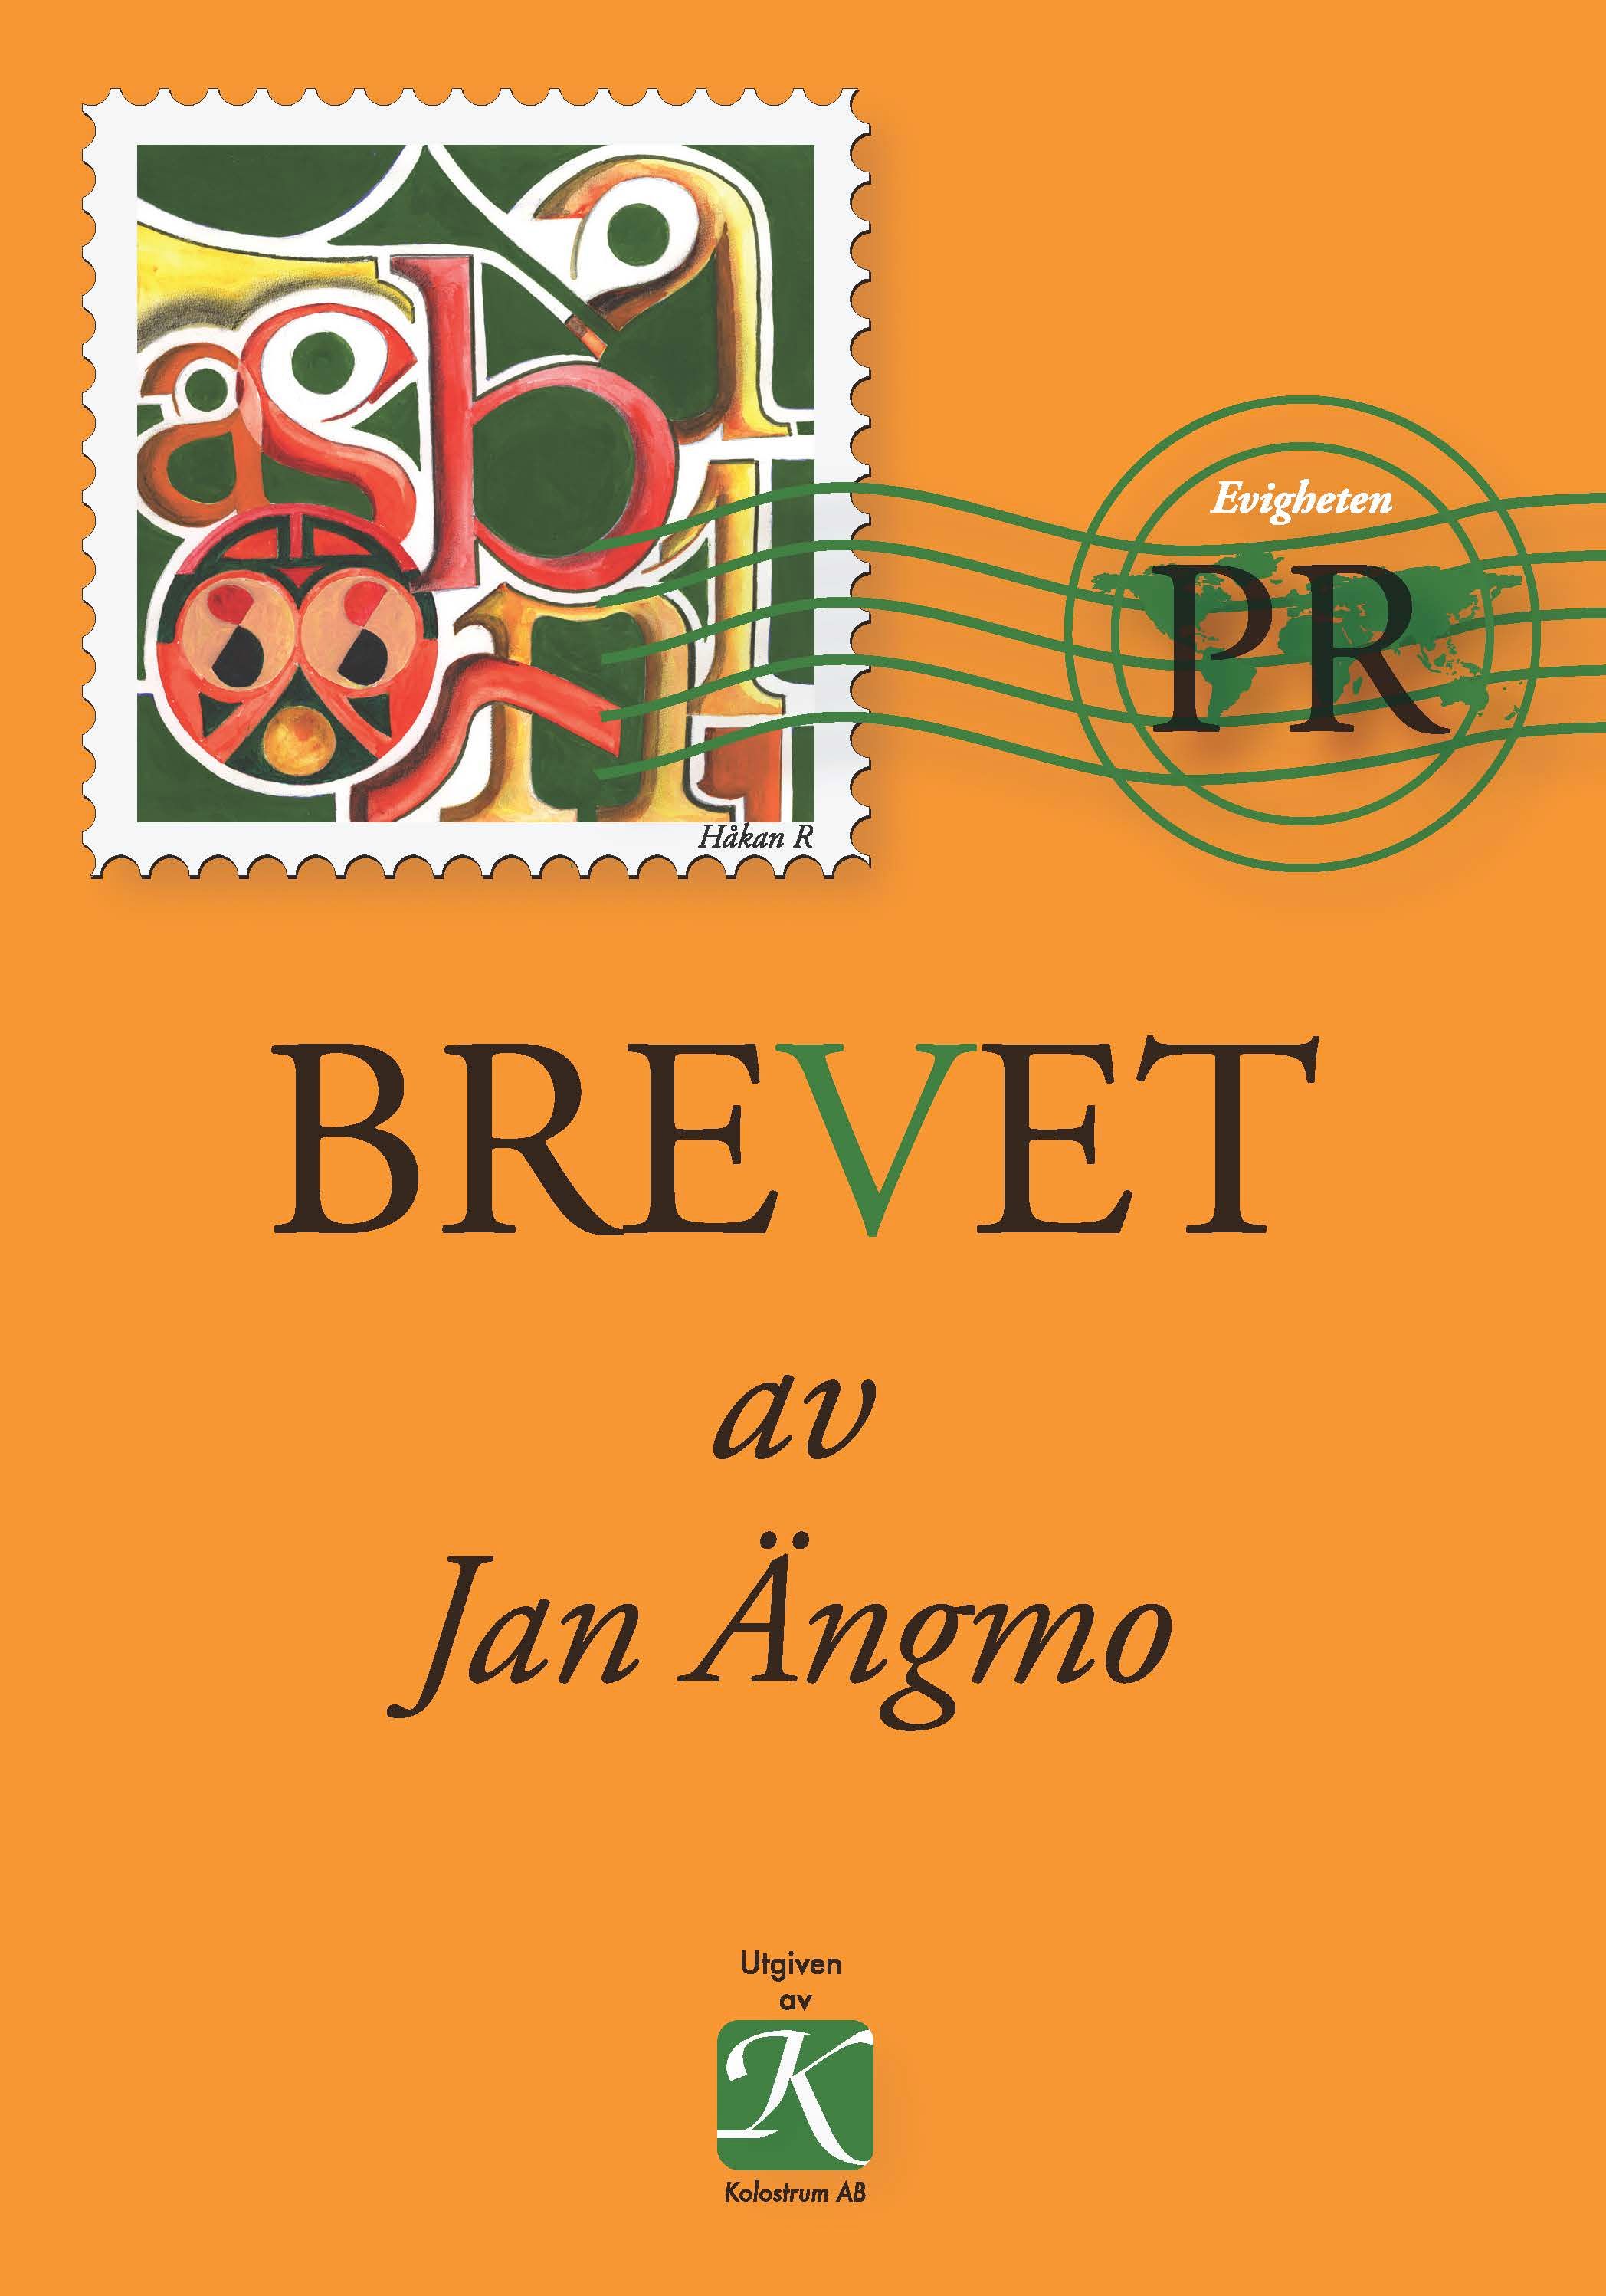 BREVET, e-bog af Jan Ängmo